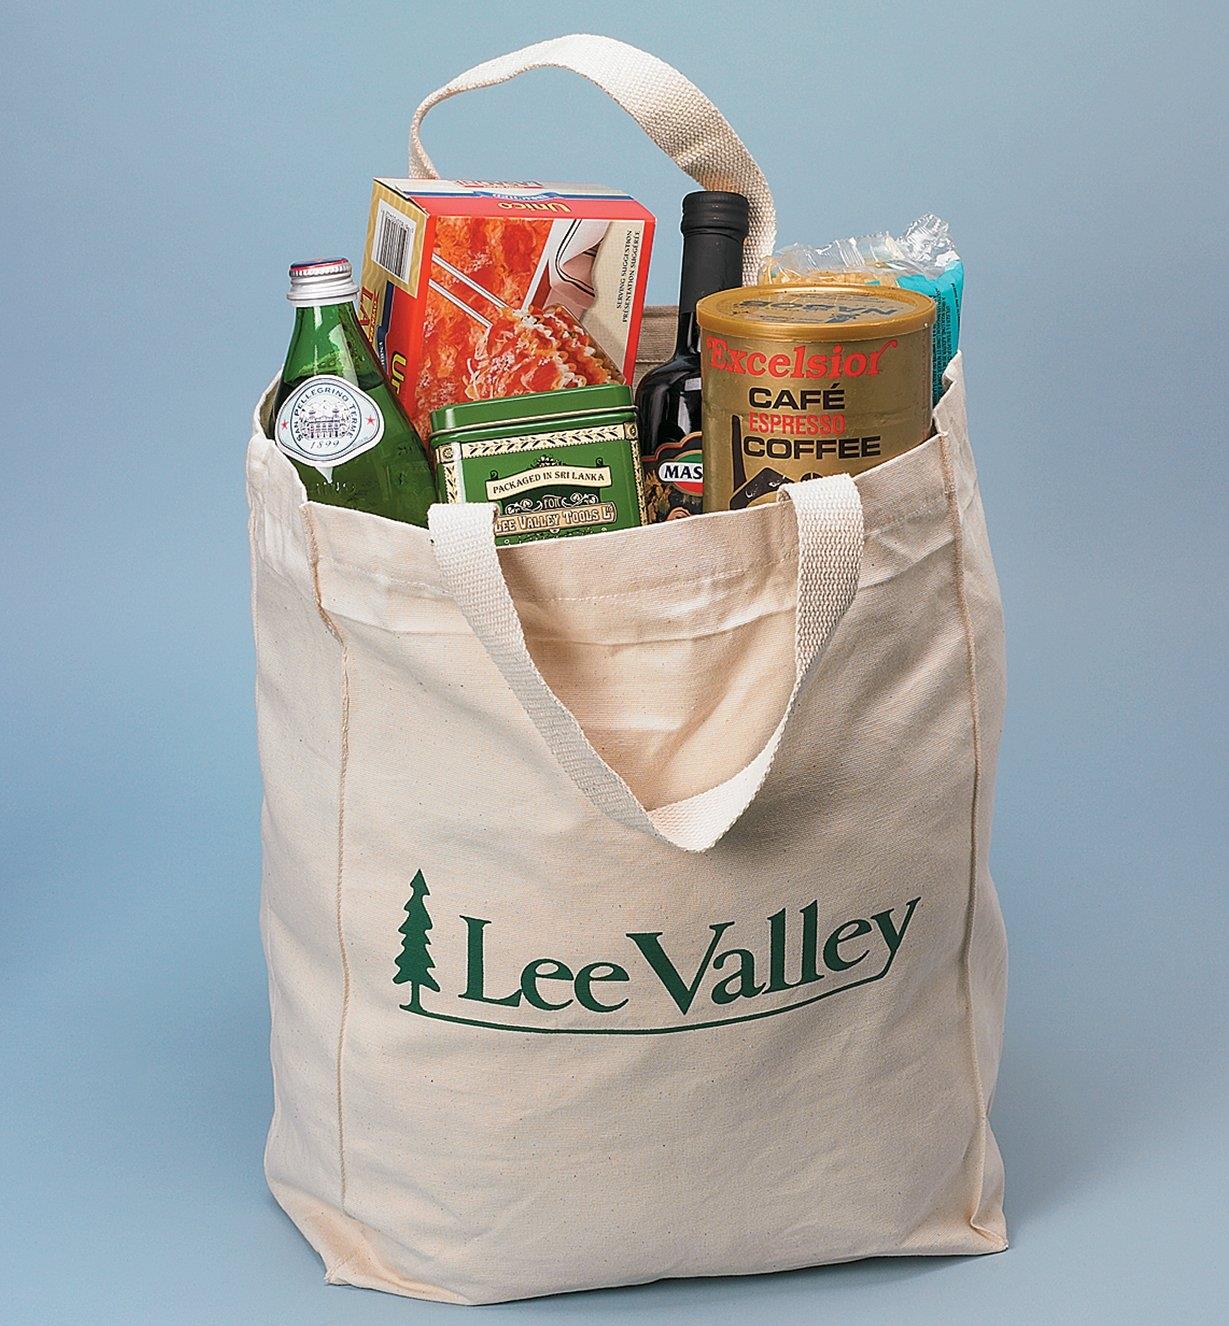 Lee Valley Tote full of groceries